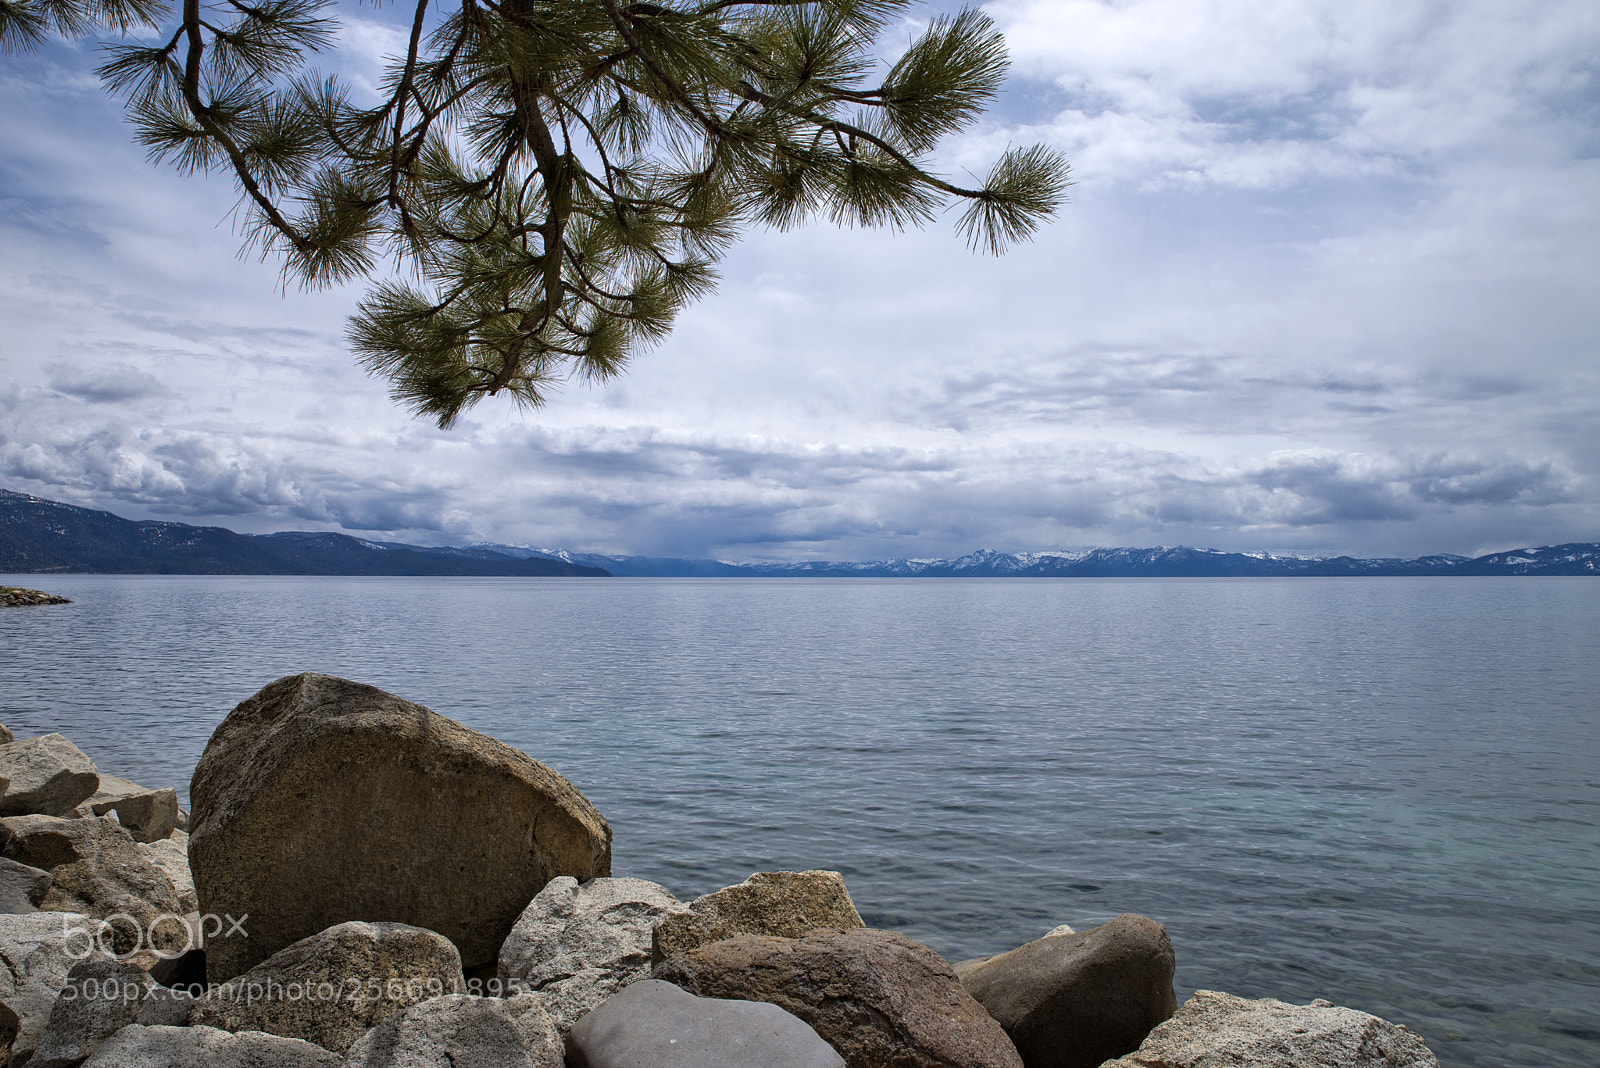 Pentax K-1 sample photo. Lake tahoe photography